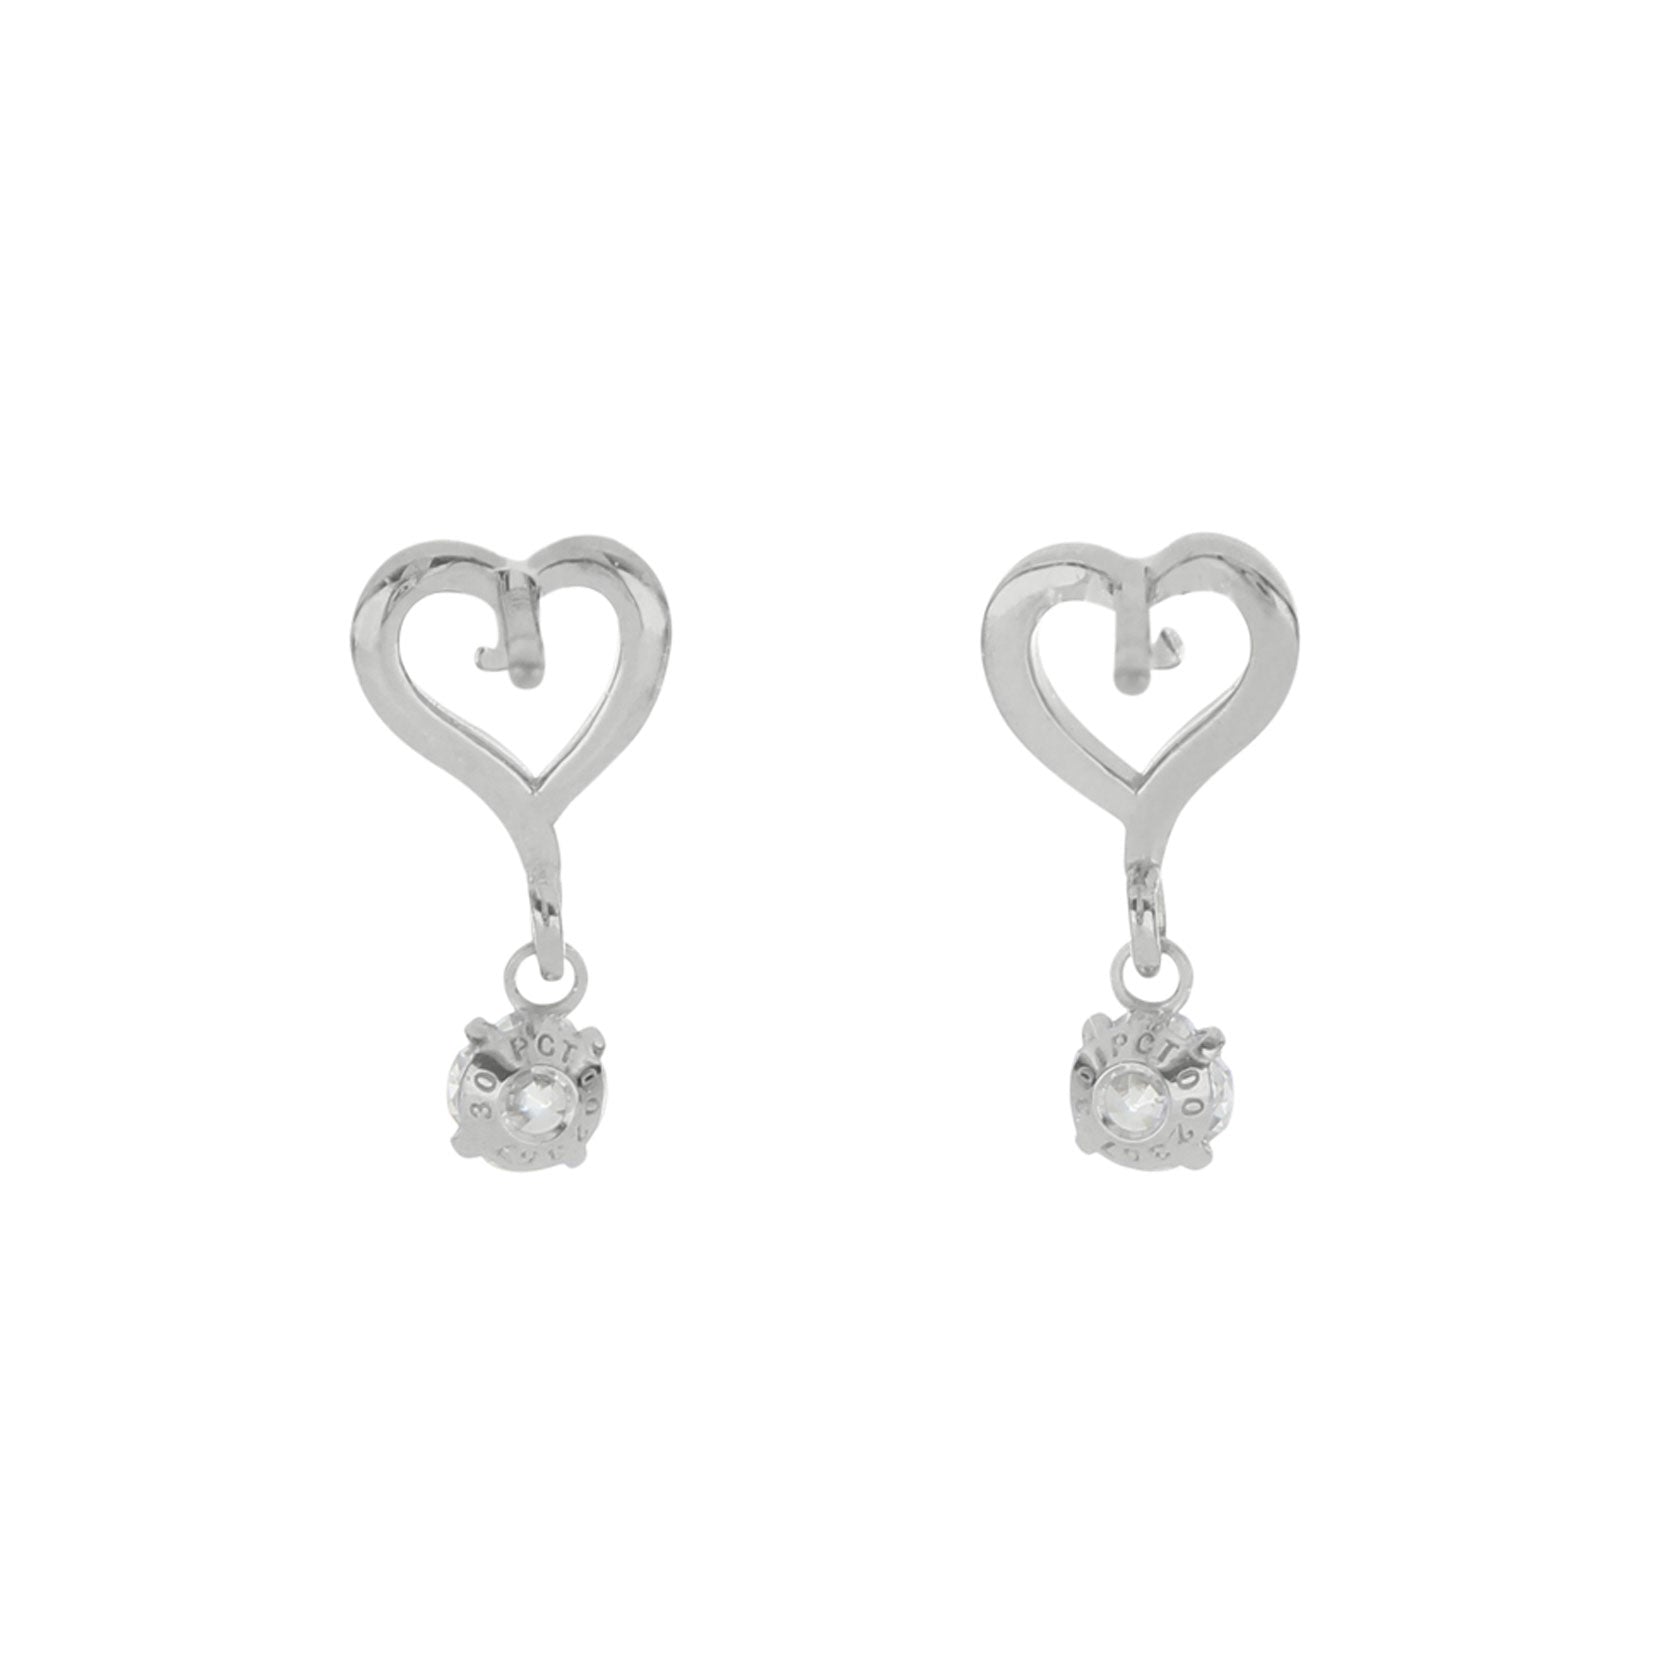 Two Hearts (NSE-005) earrings